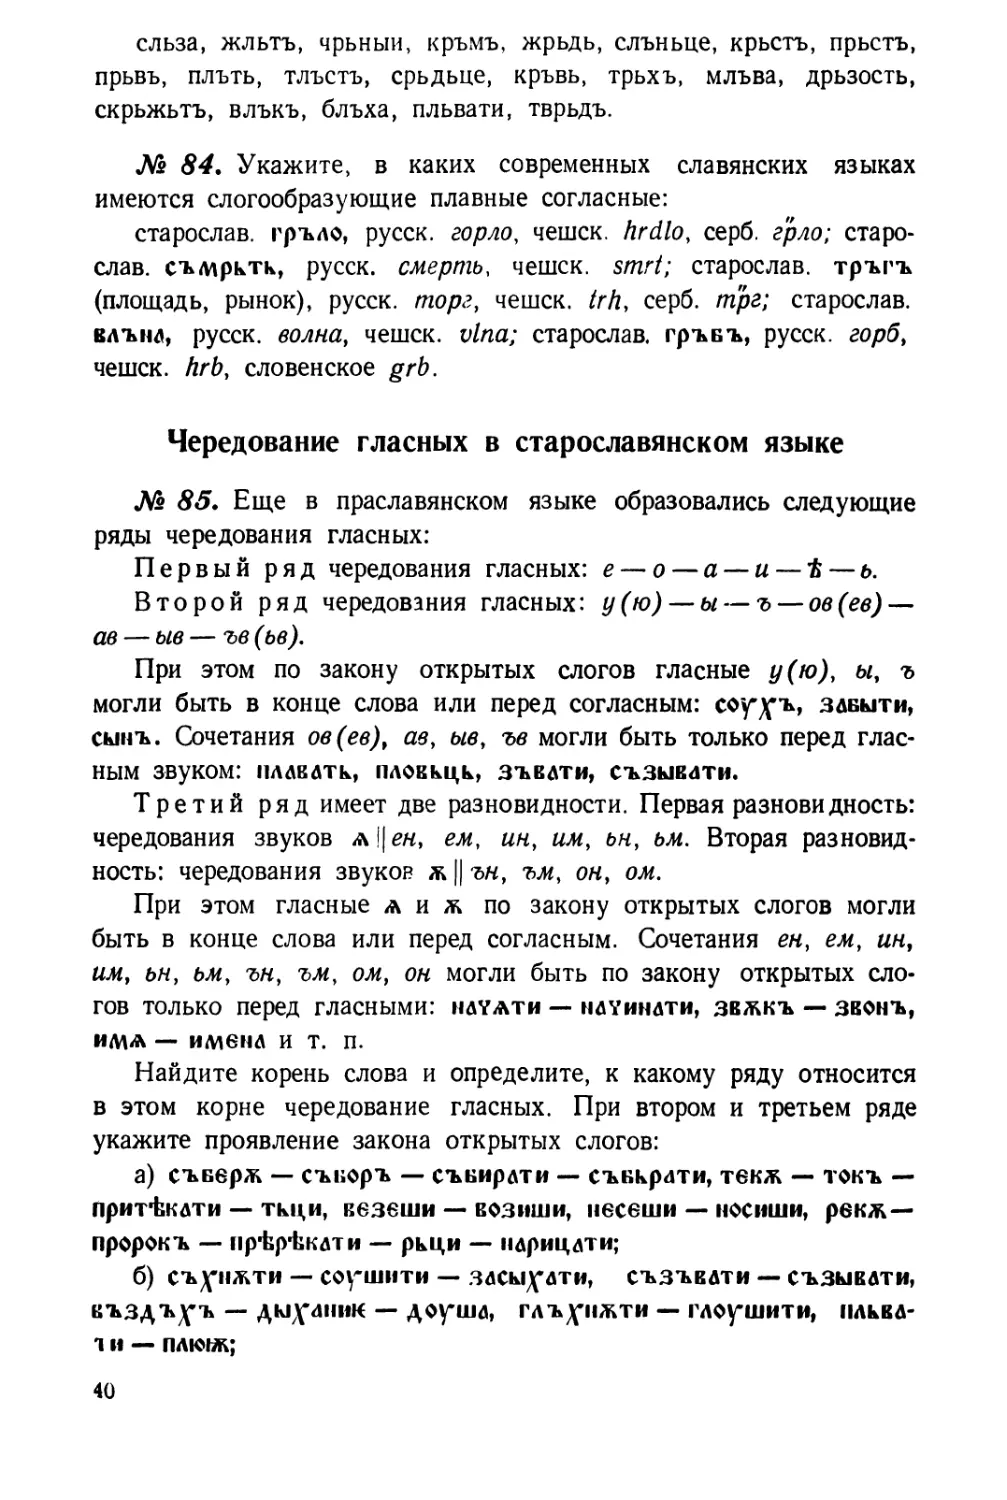 Чередование гласных в старославянском языке